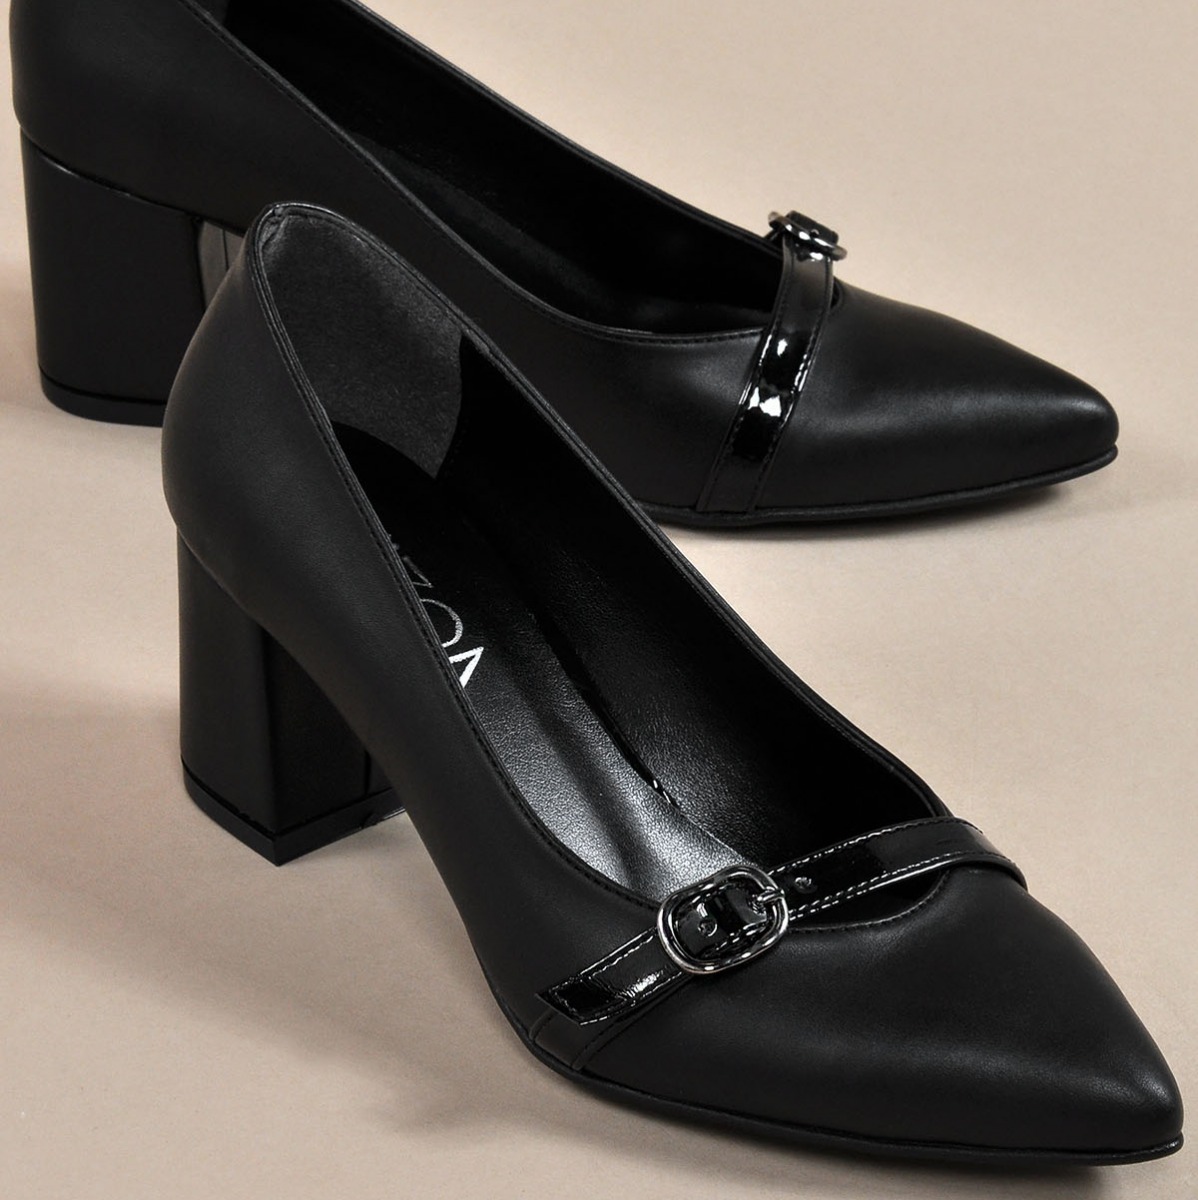 Flo Kadın  Siyah-Cilt Klasik Topuklu Ayakkabı VZN19-110K. 3